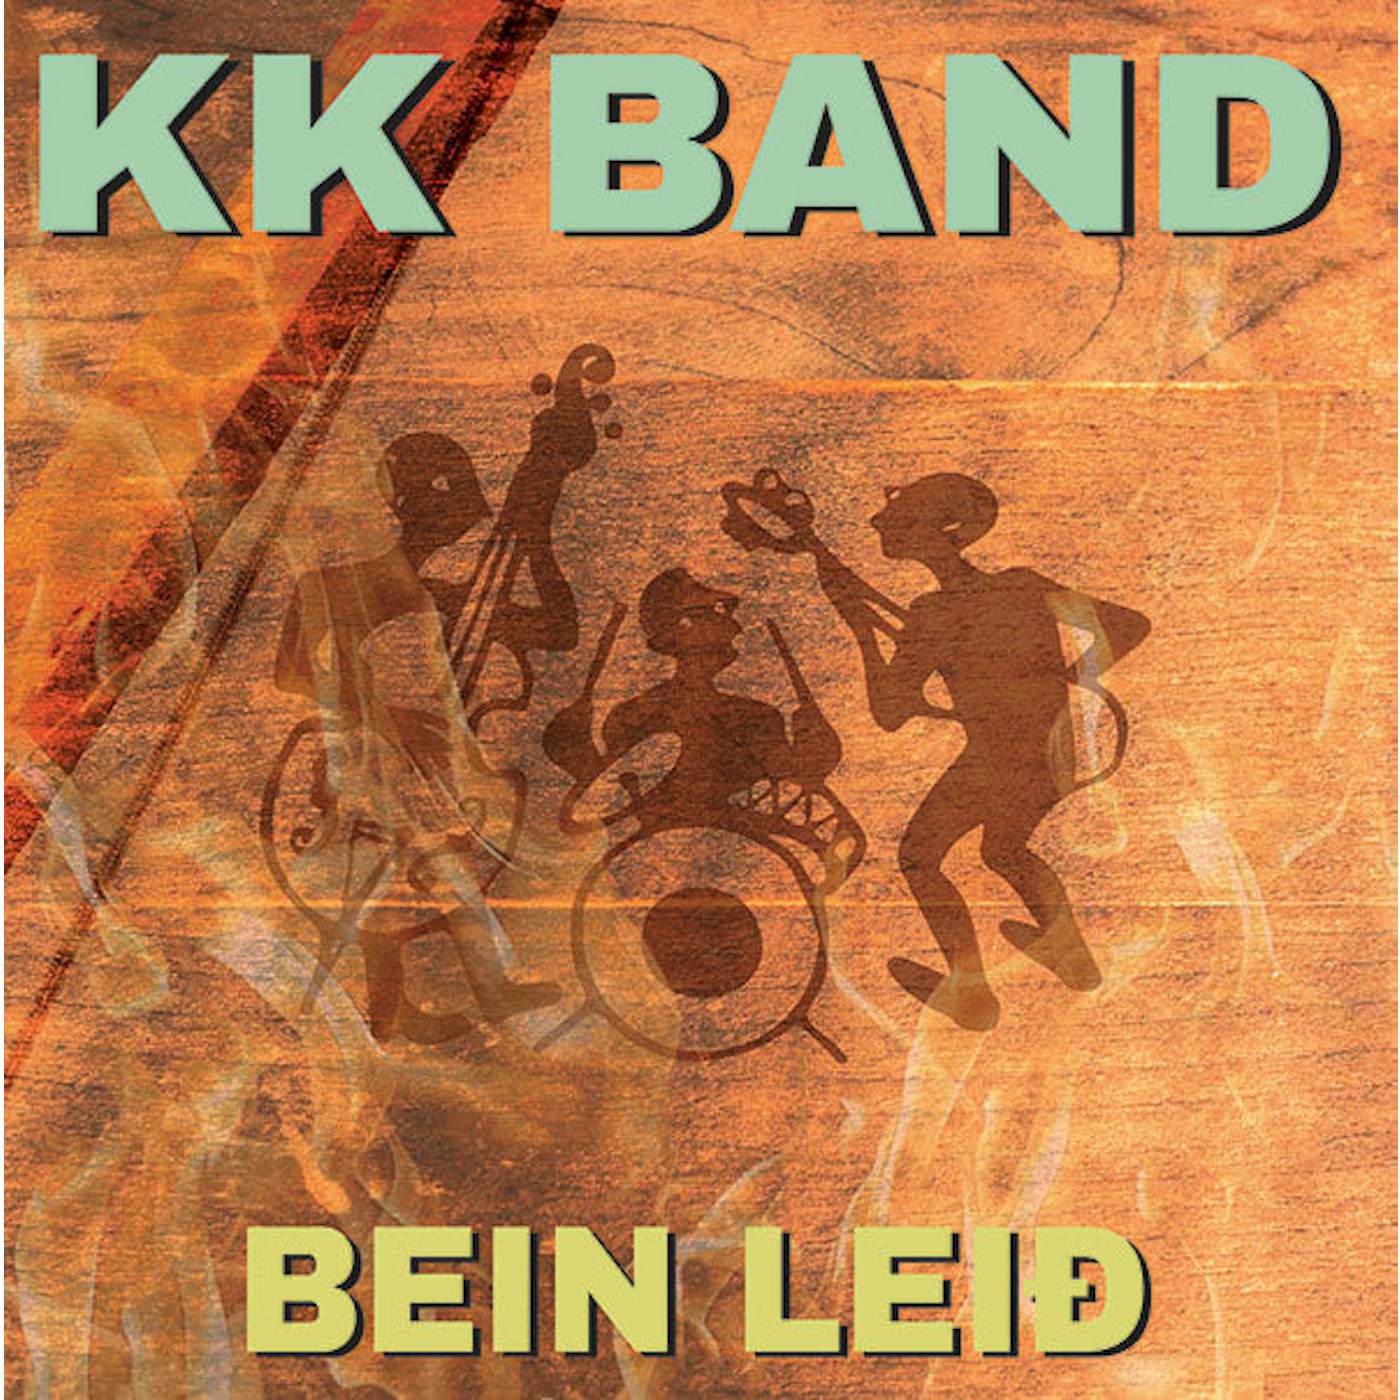 KK band - Bein leið